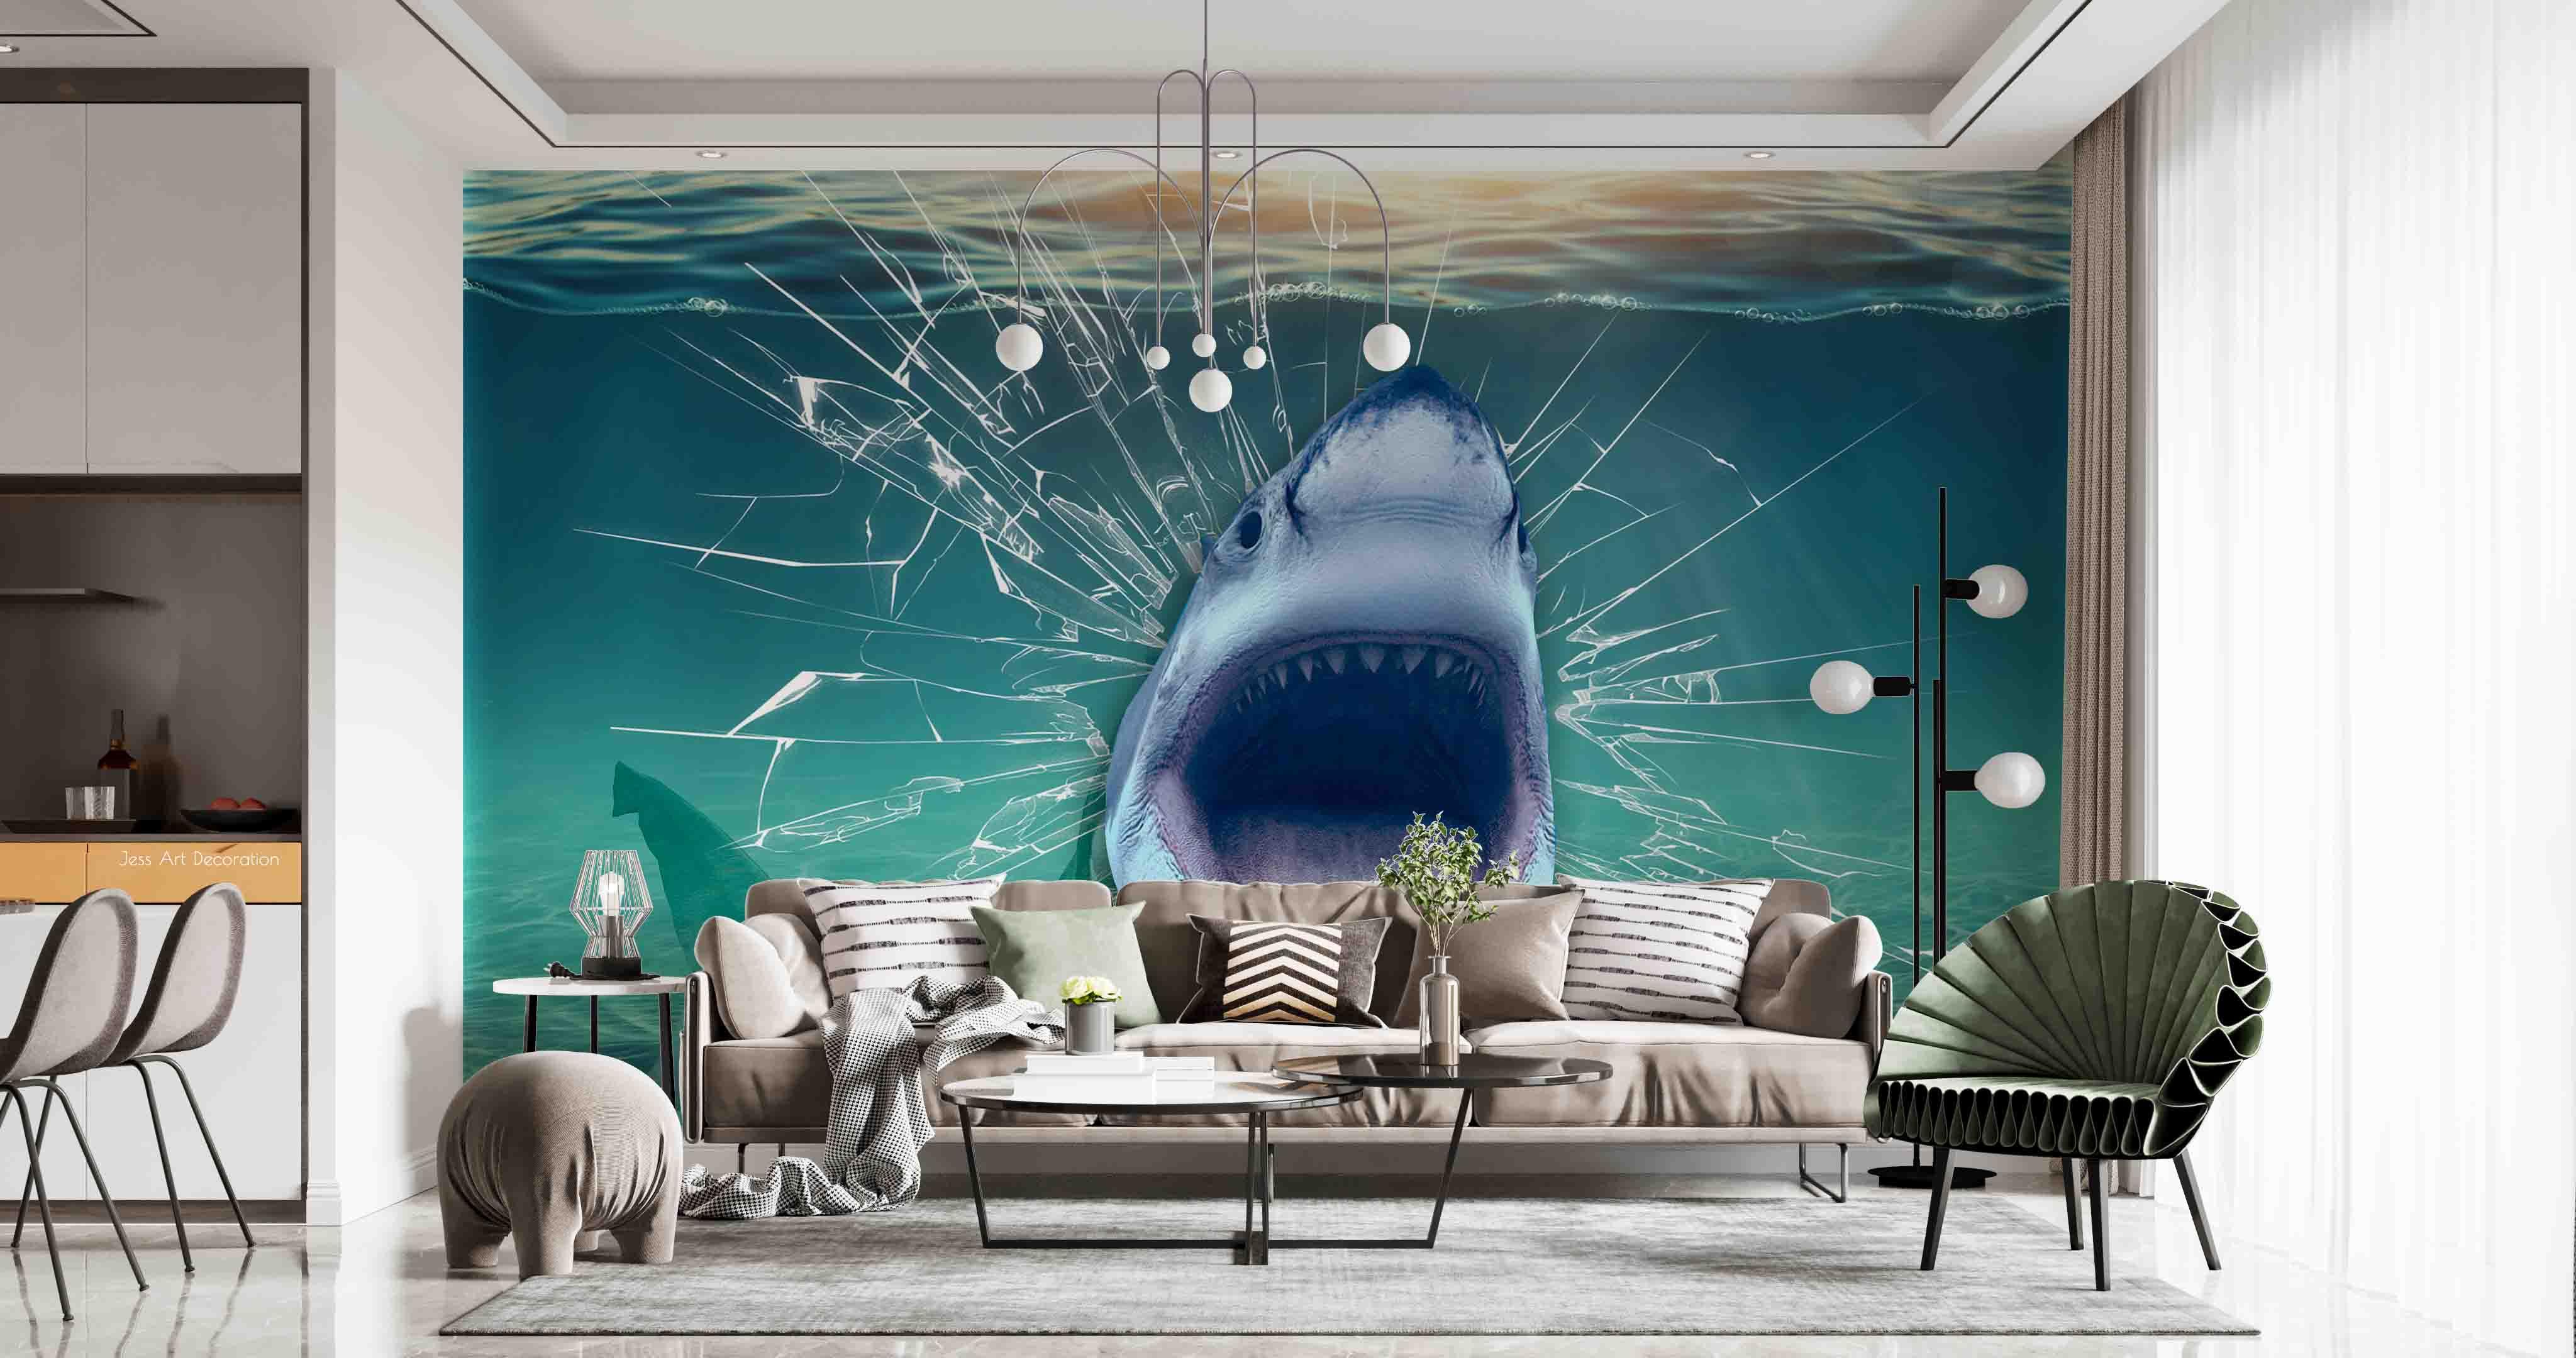 3D Glass Tank Crack Shark Mouth Wall Mural Wallpaper GD 2572- Jess Art Decoration